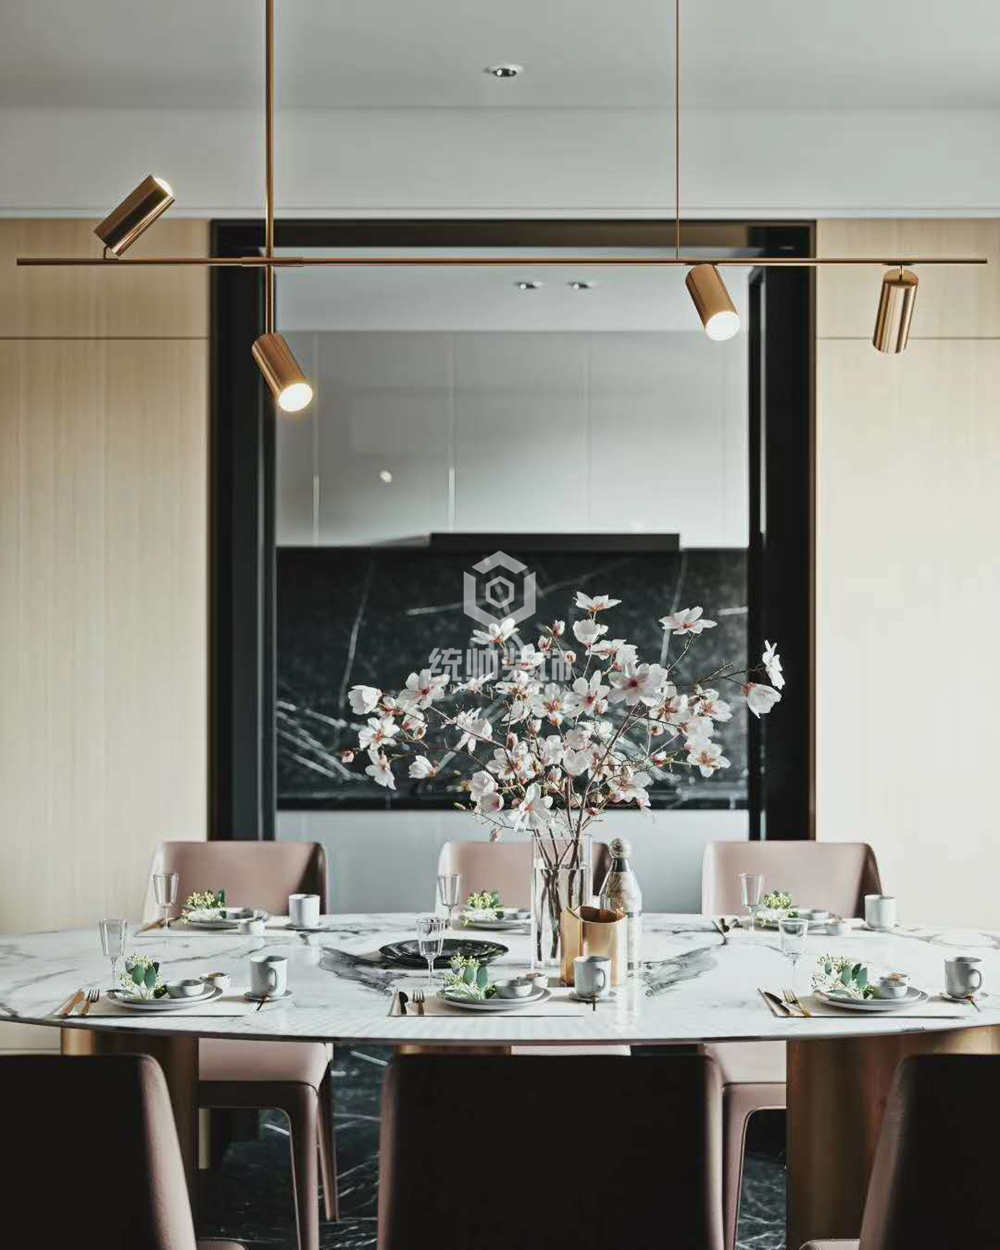 浦东新区新都会 121平美式餐厅装修效果图